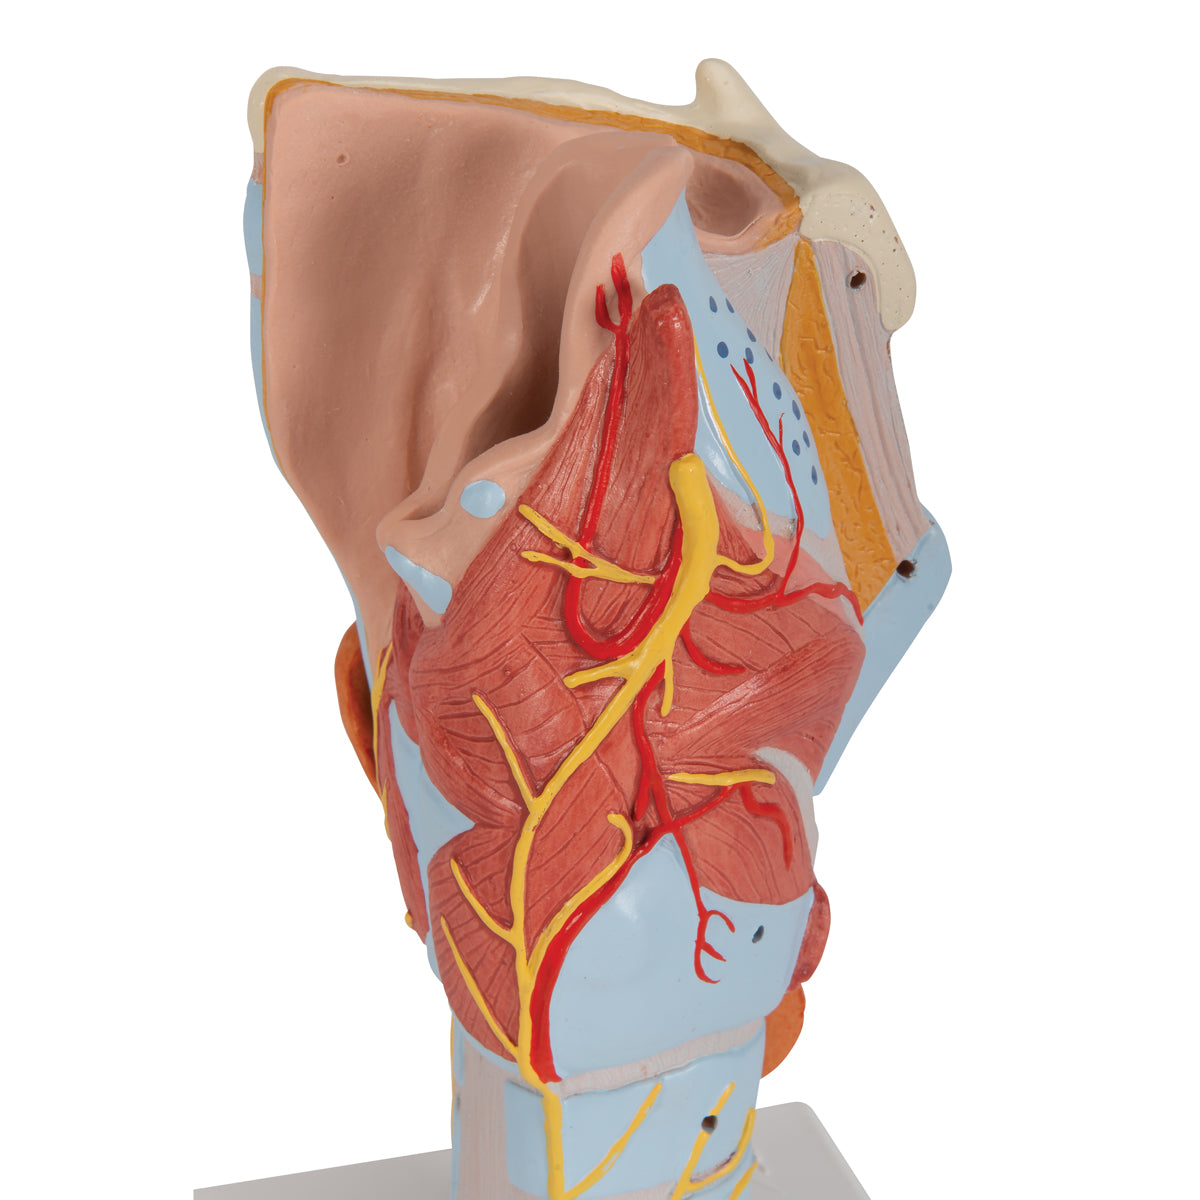 Förstorad struphuvudsmodell med stämband och flera andra vävnader. Kan delas upp i 7 delar